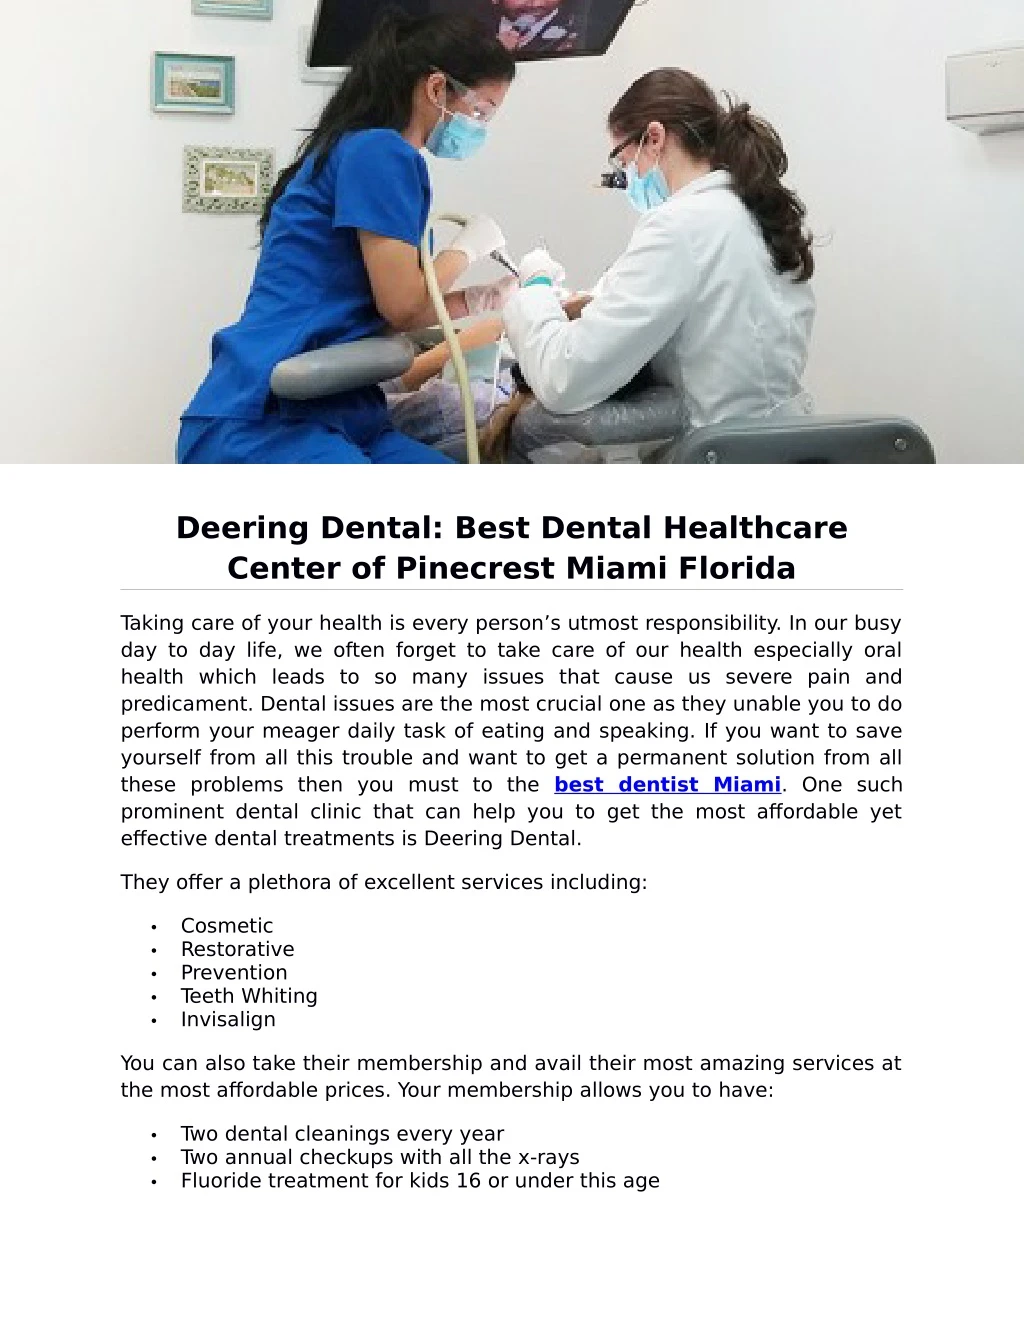 deering dental best dental healthcare center